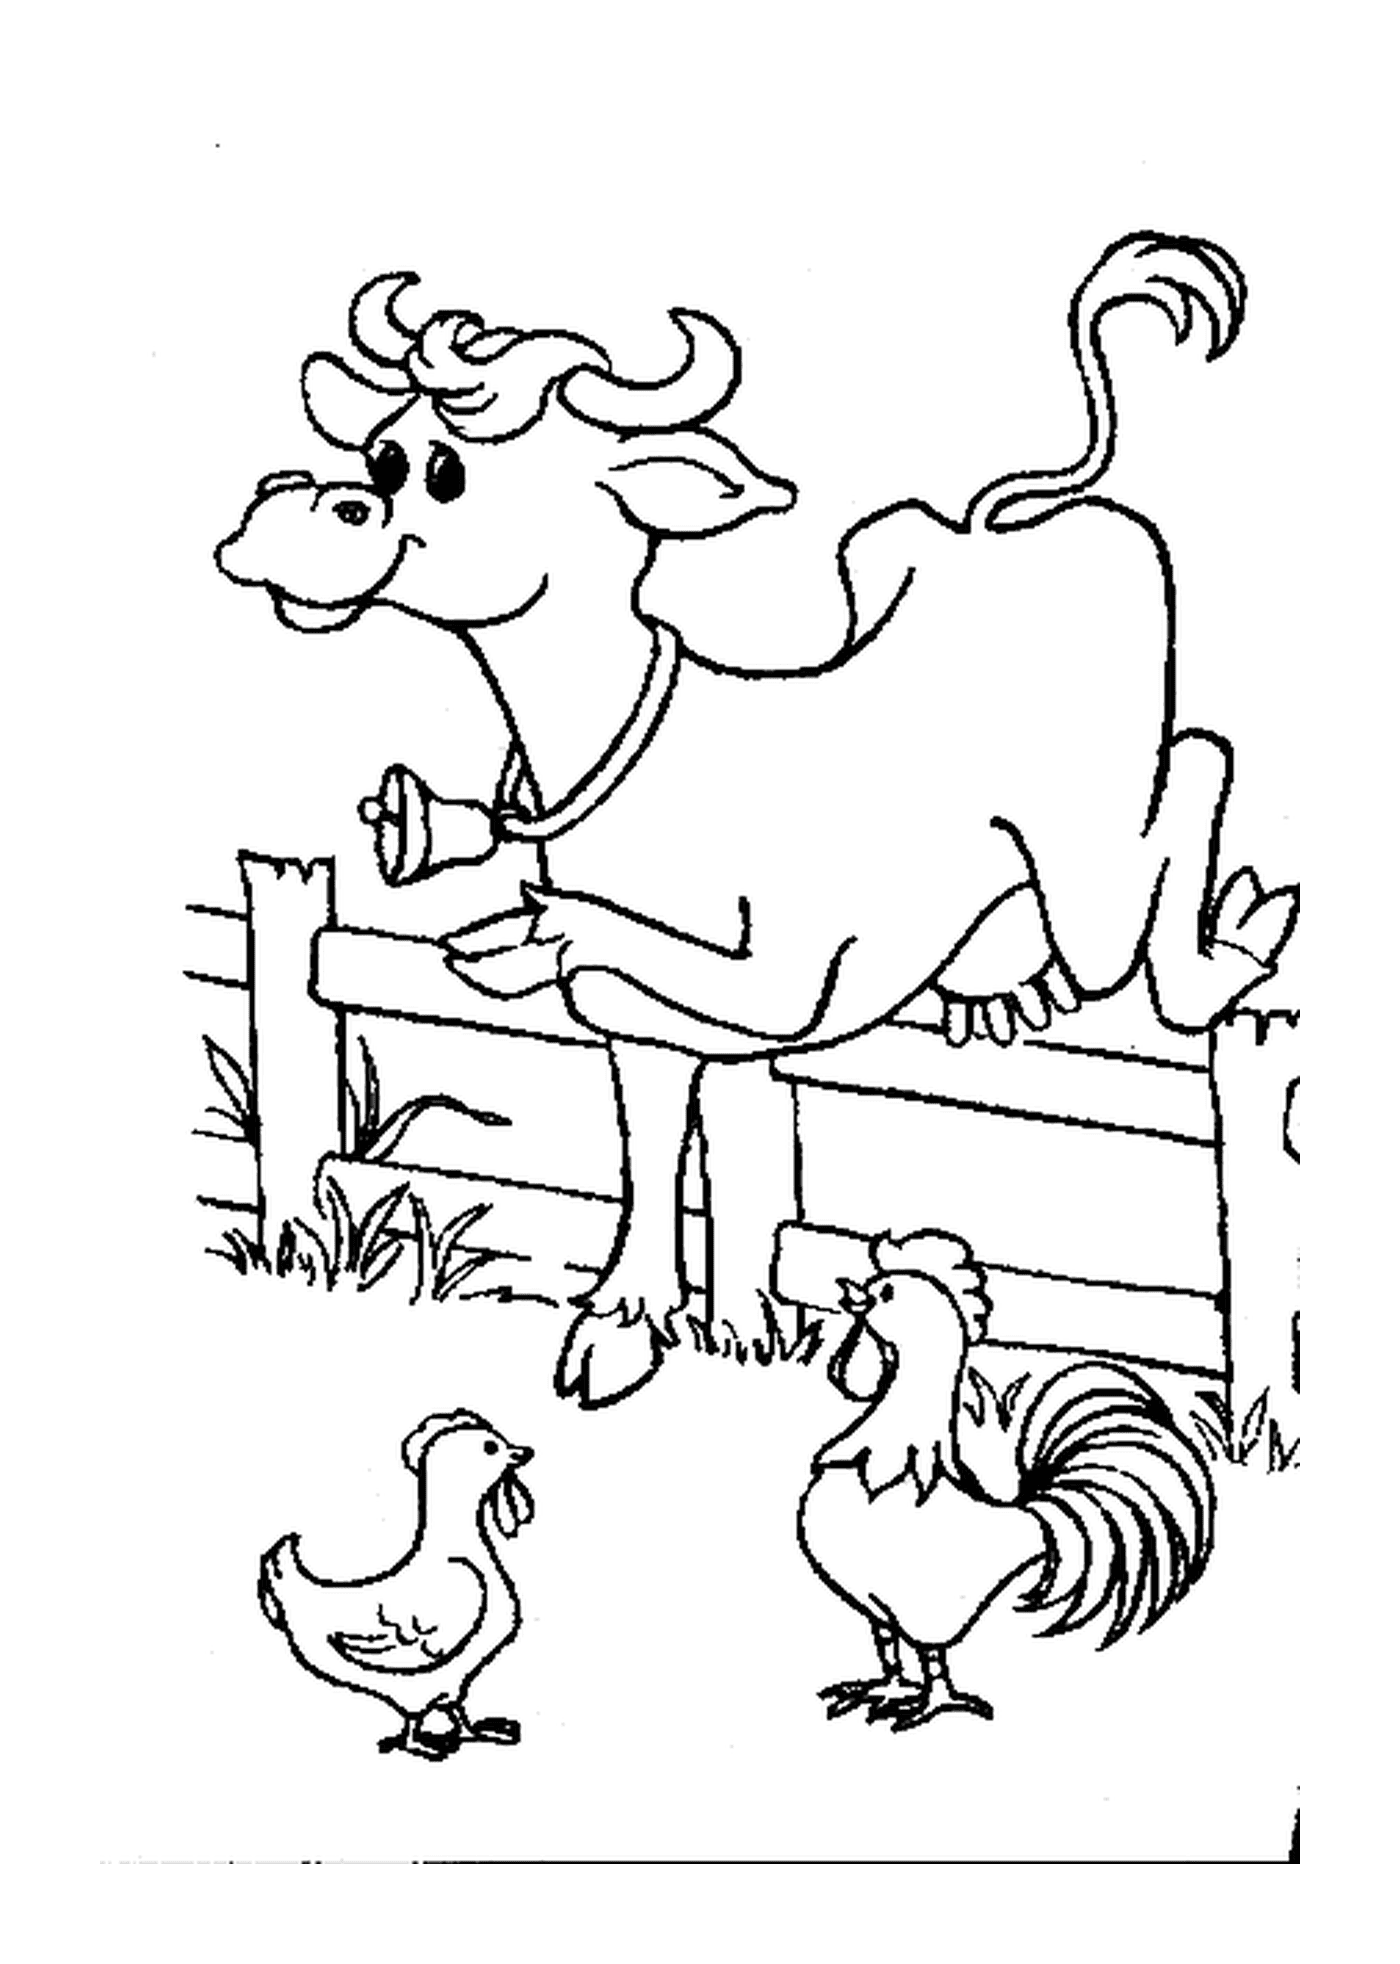  Galinhas de esgrima de salto de vaca 